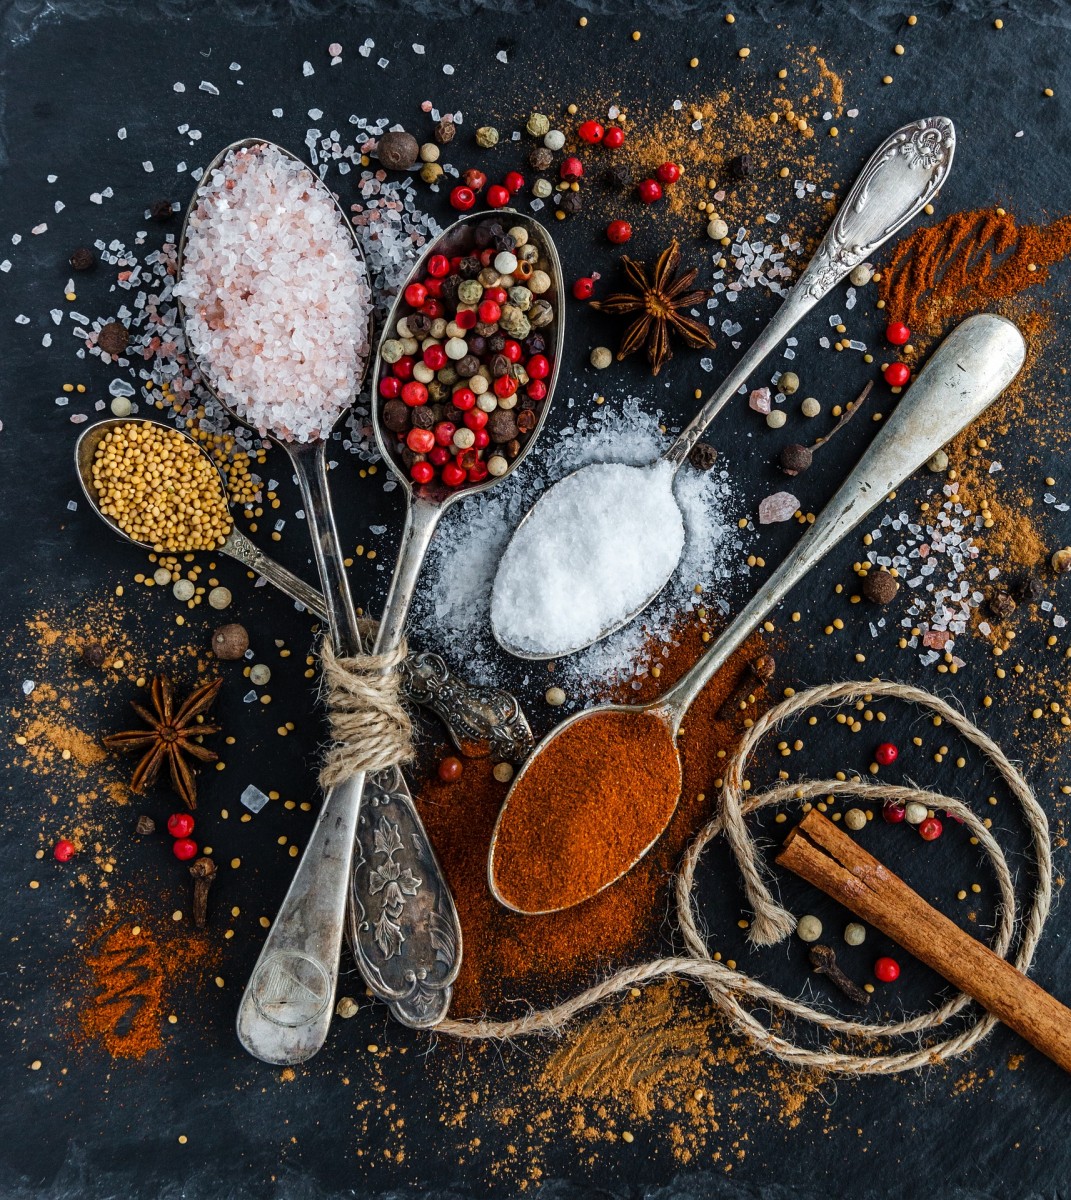 В настоящее время морская соль стала необычайно популярным продуктом, применяемым в процессе приготовления еды